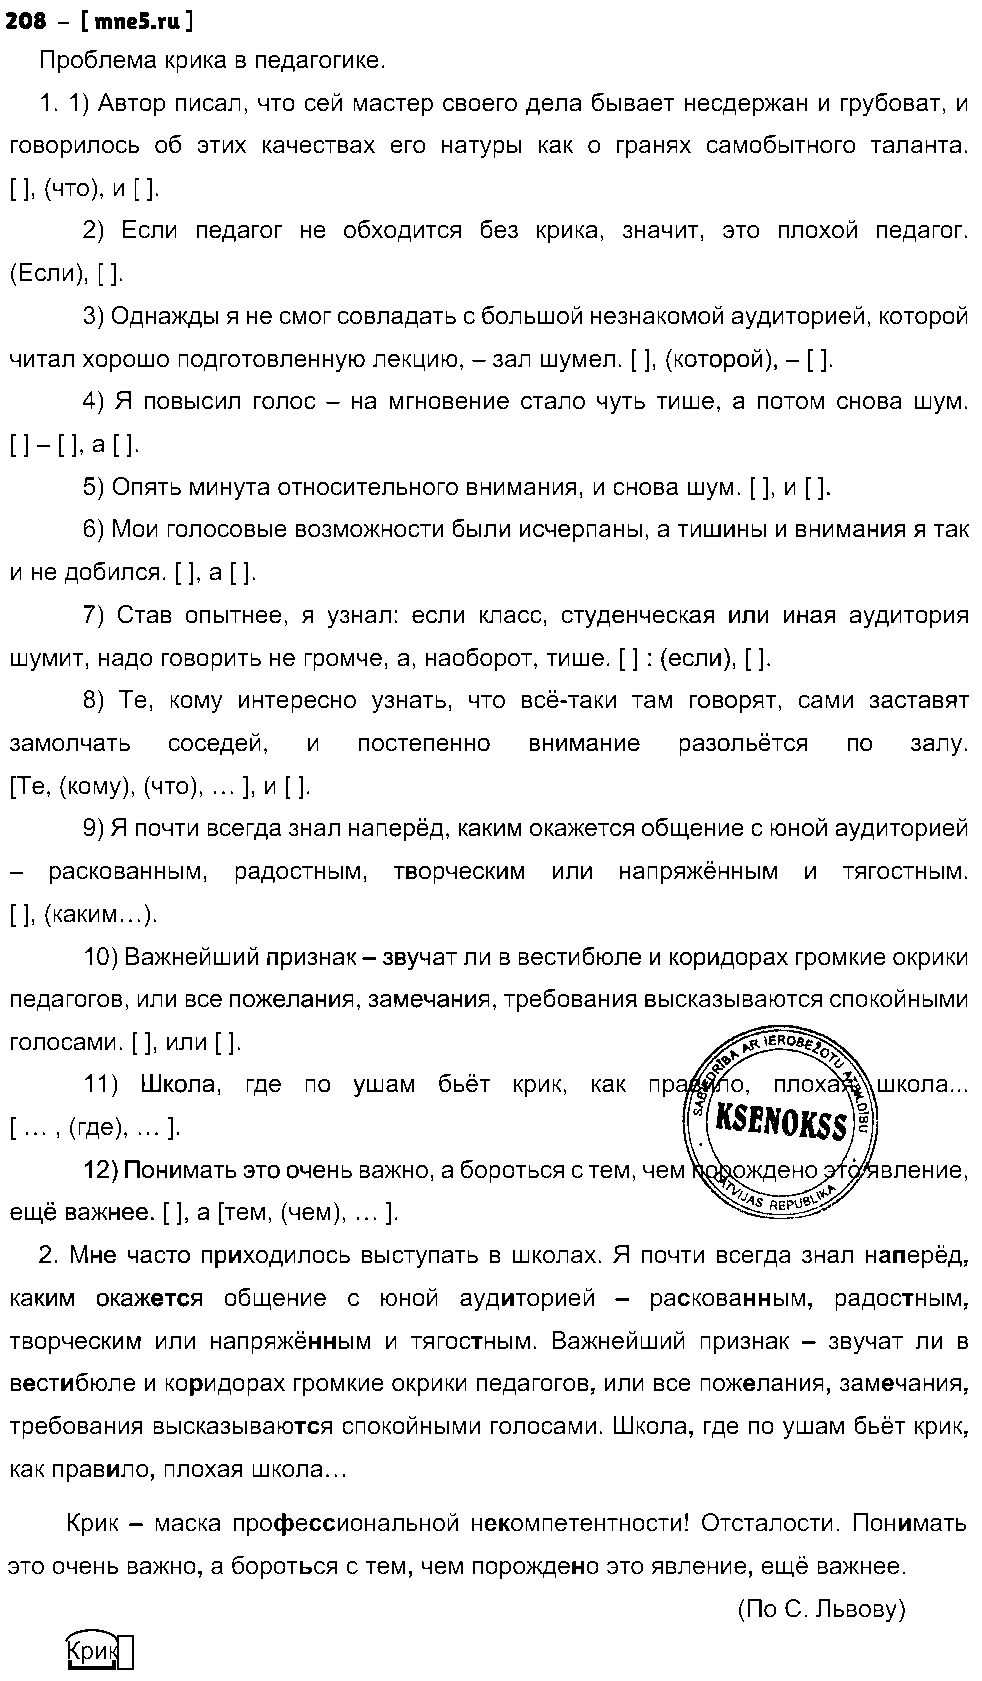 ГДЗ Русский язык 9 класс - 208